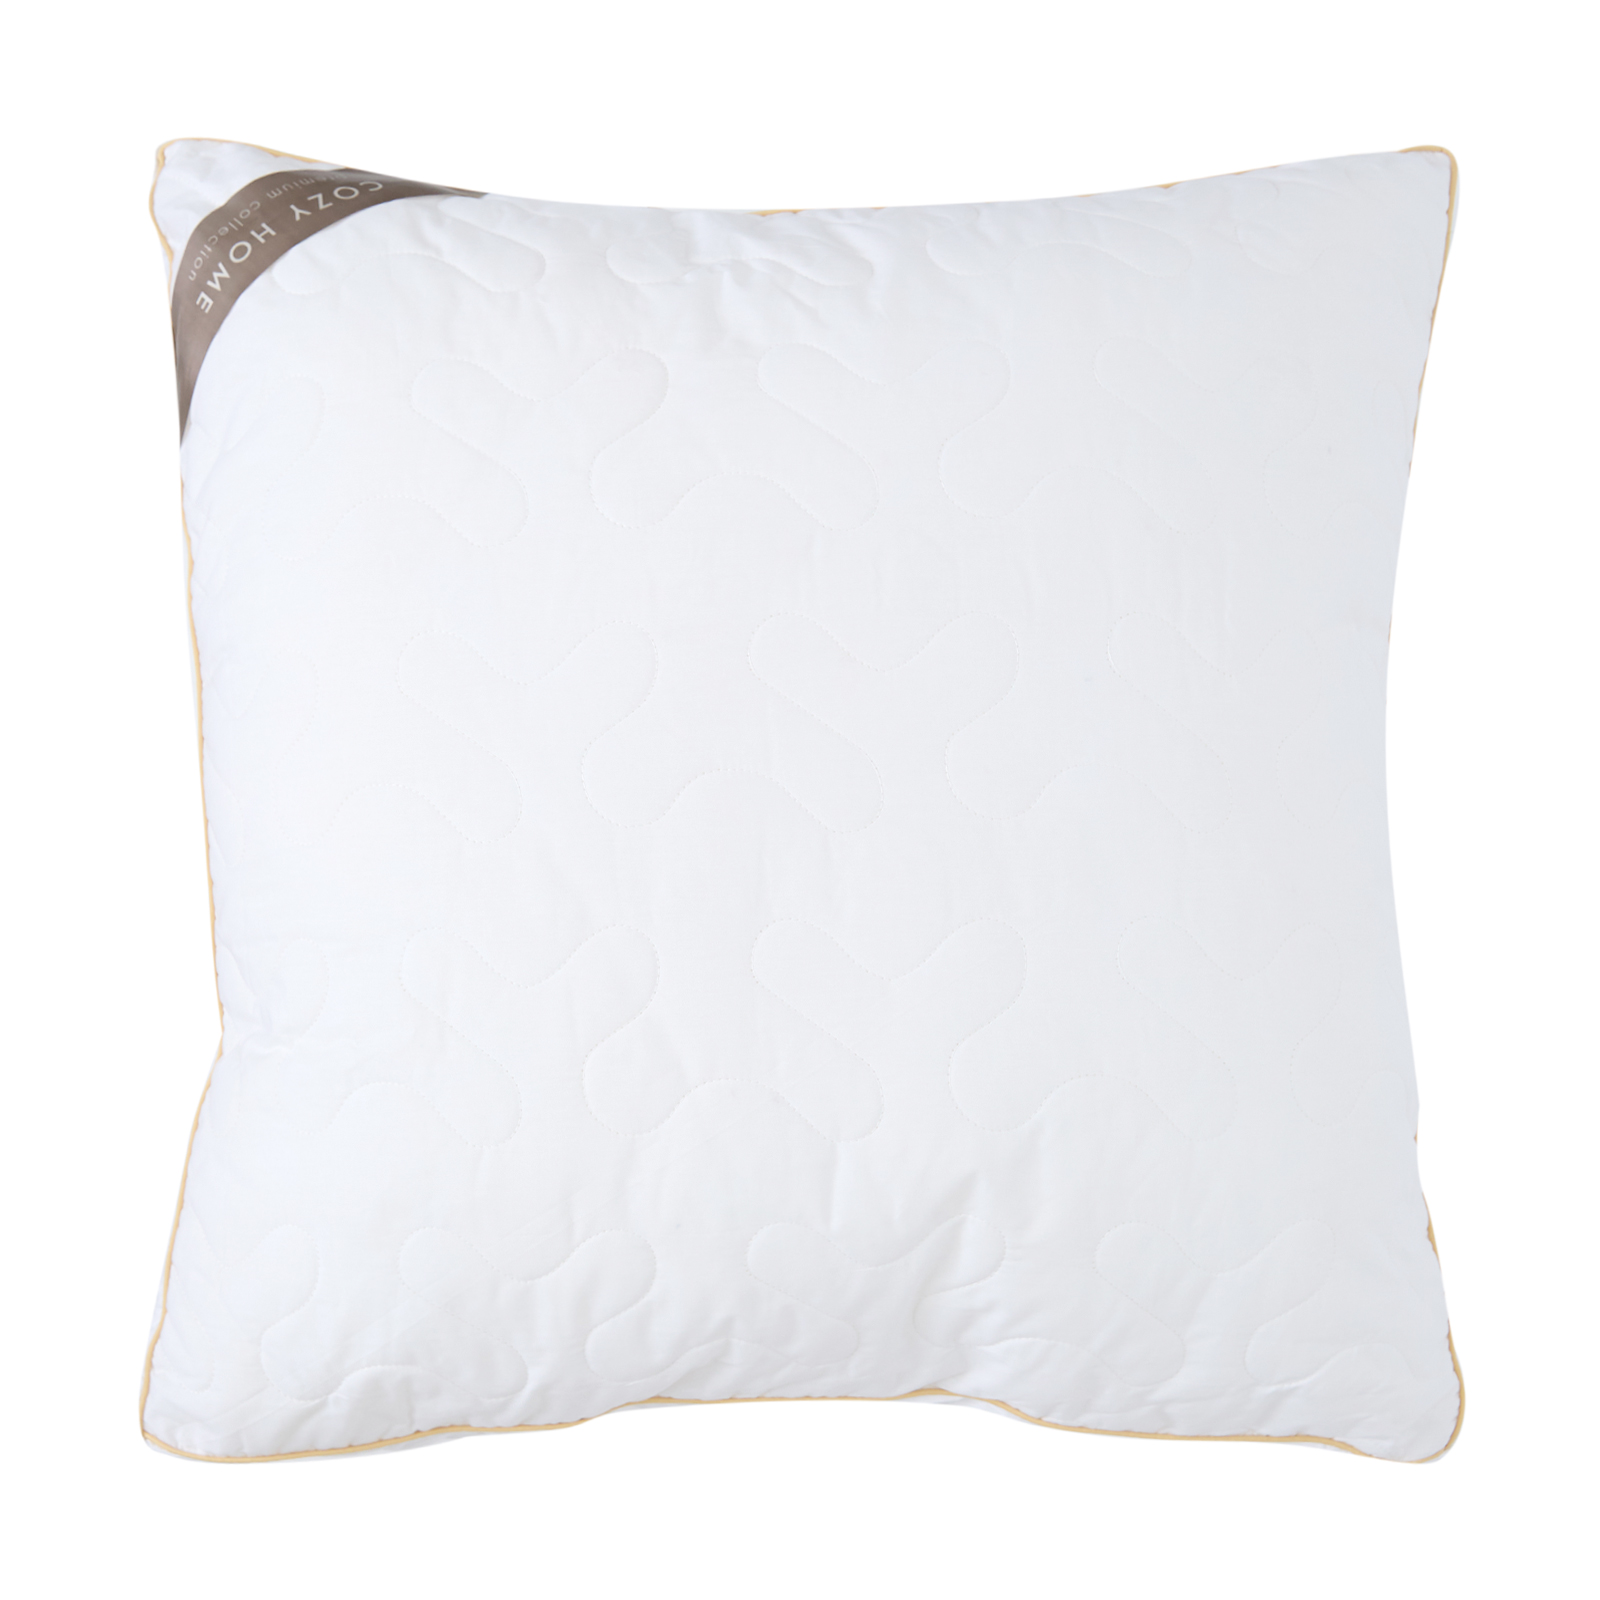 vesta подушка на молнии царские сны бамбук 70х70 см белый перкаль хлопок 100% Подушка Cozy Cashmere